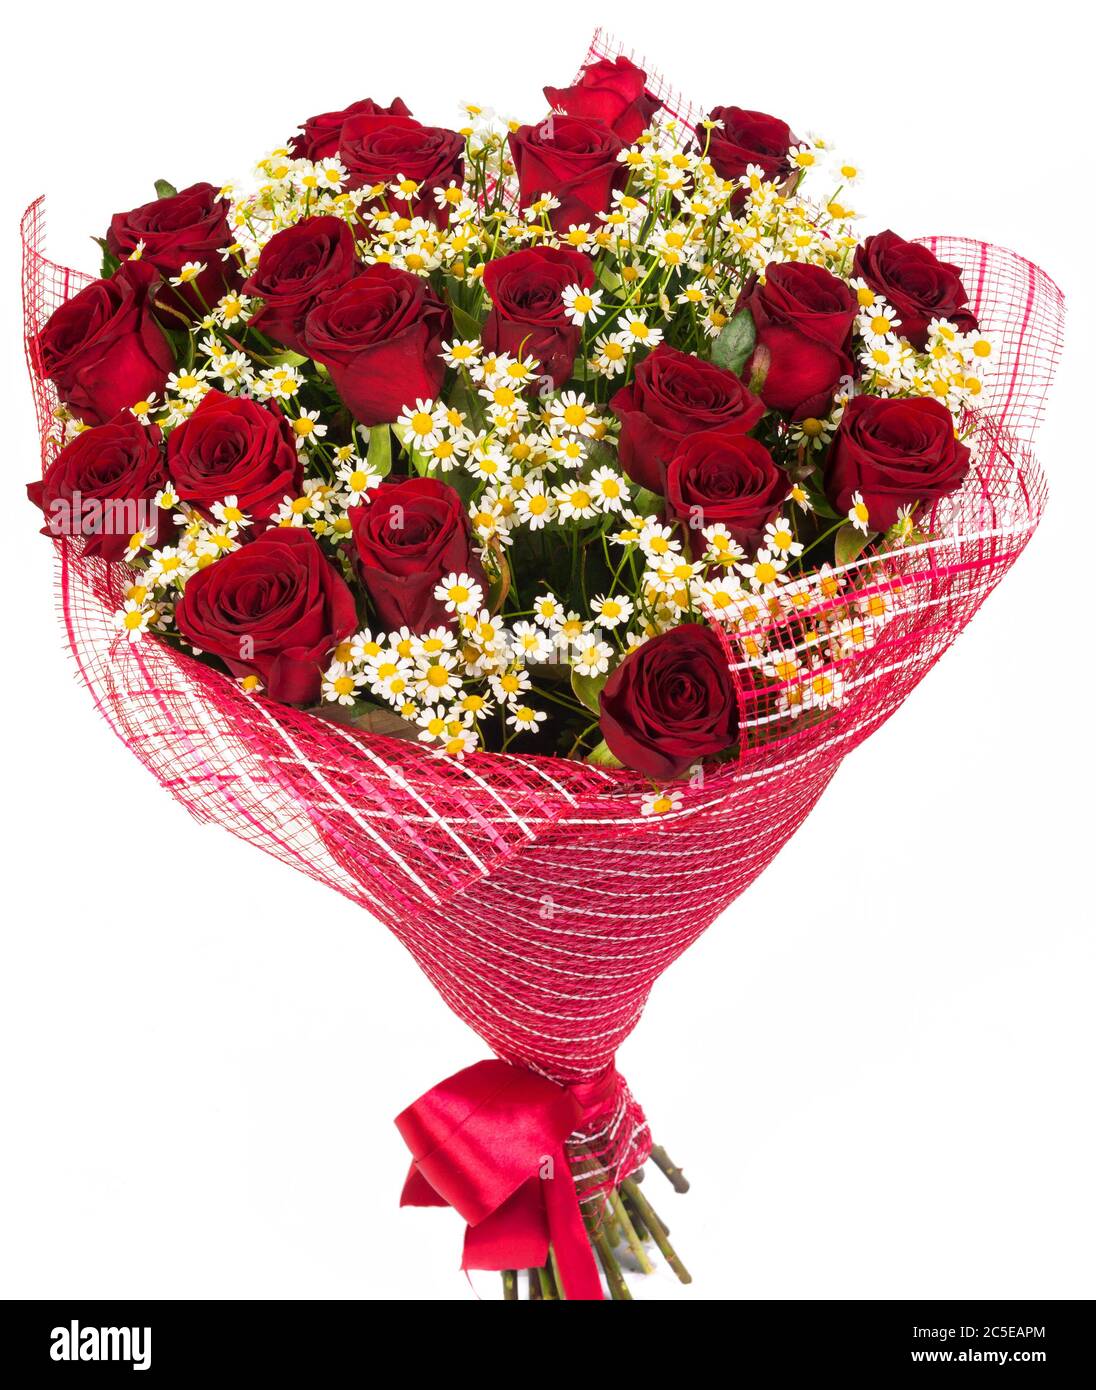 Ramo de rosas rojas y margaritas aisladas sobre fondo blanco Foto de stock